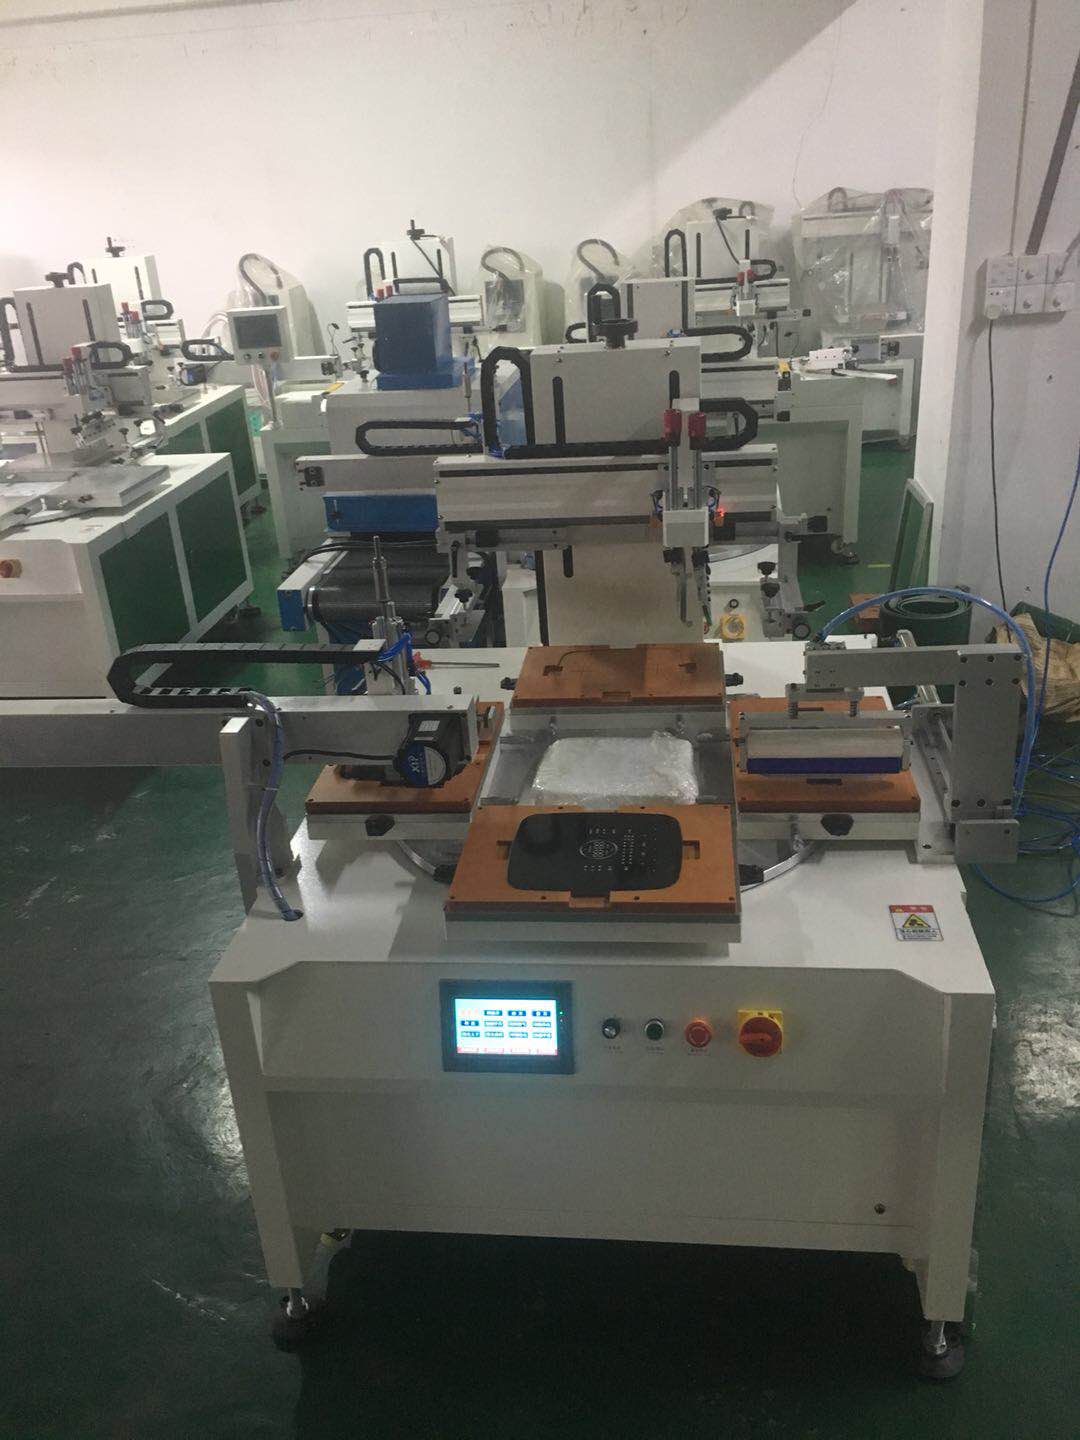 天津市丝印机厂家手动移印机设备斜臂式丝网印刷机唯一销售处